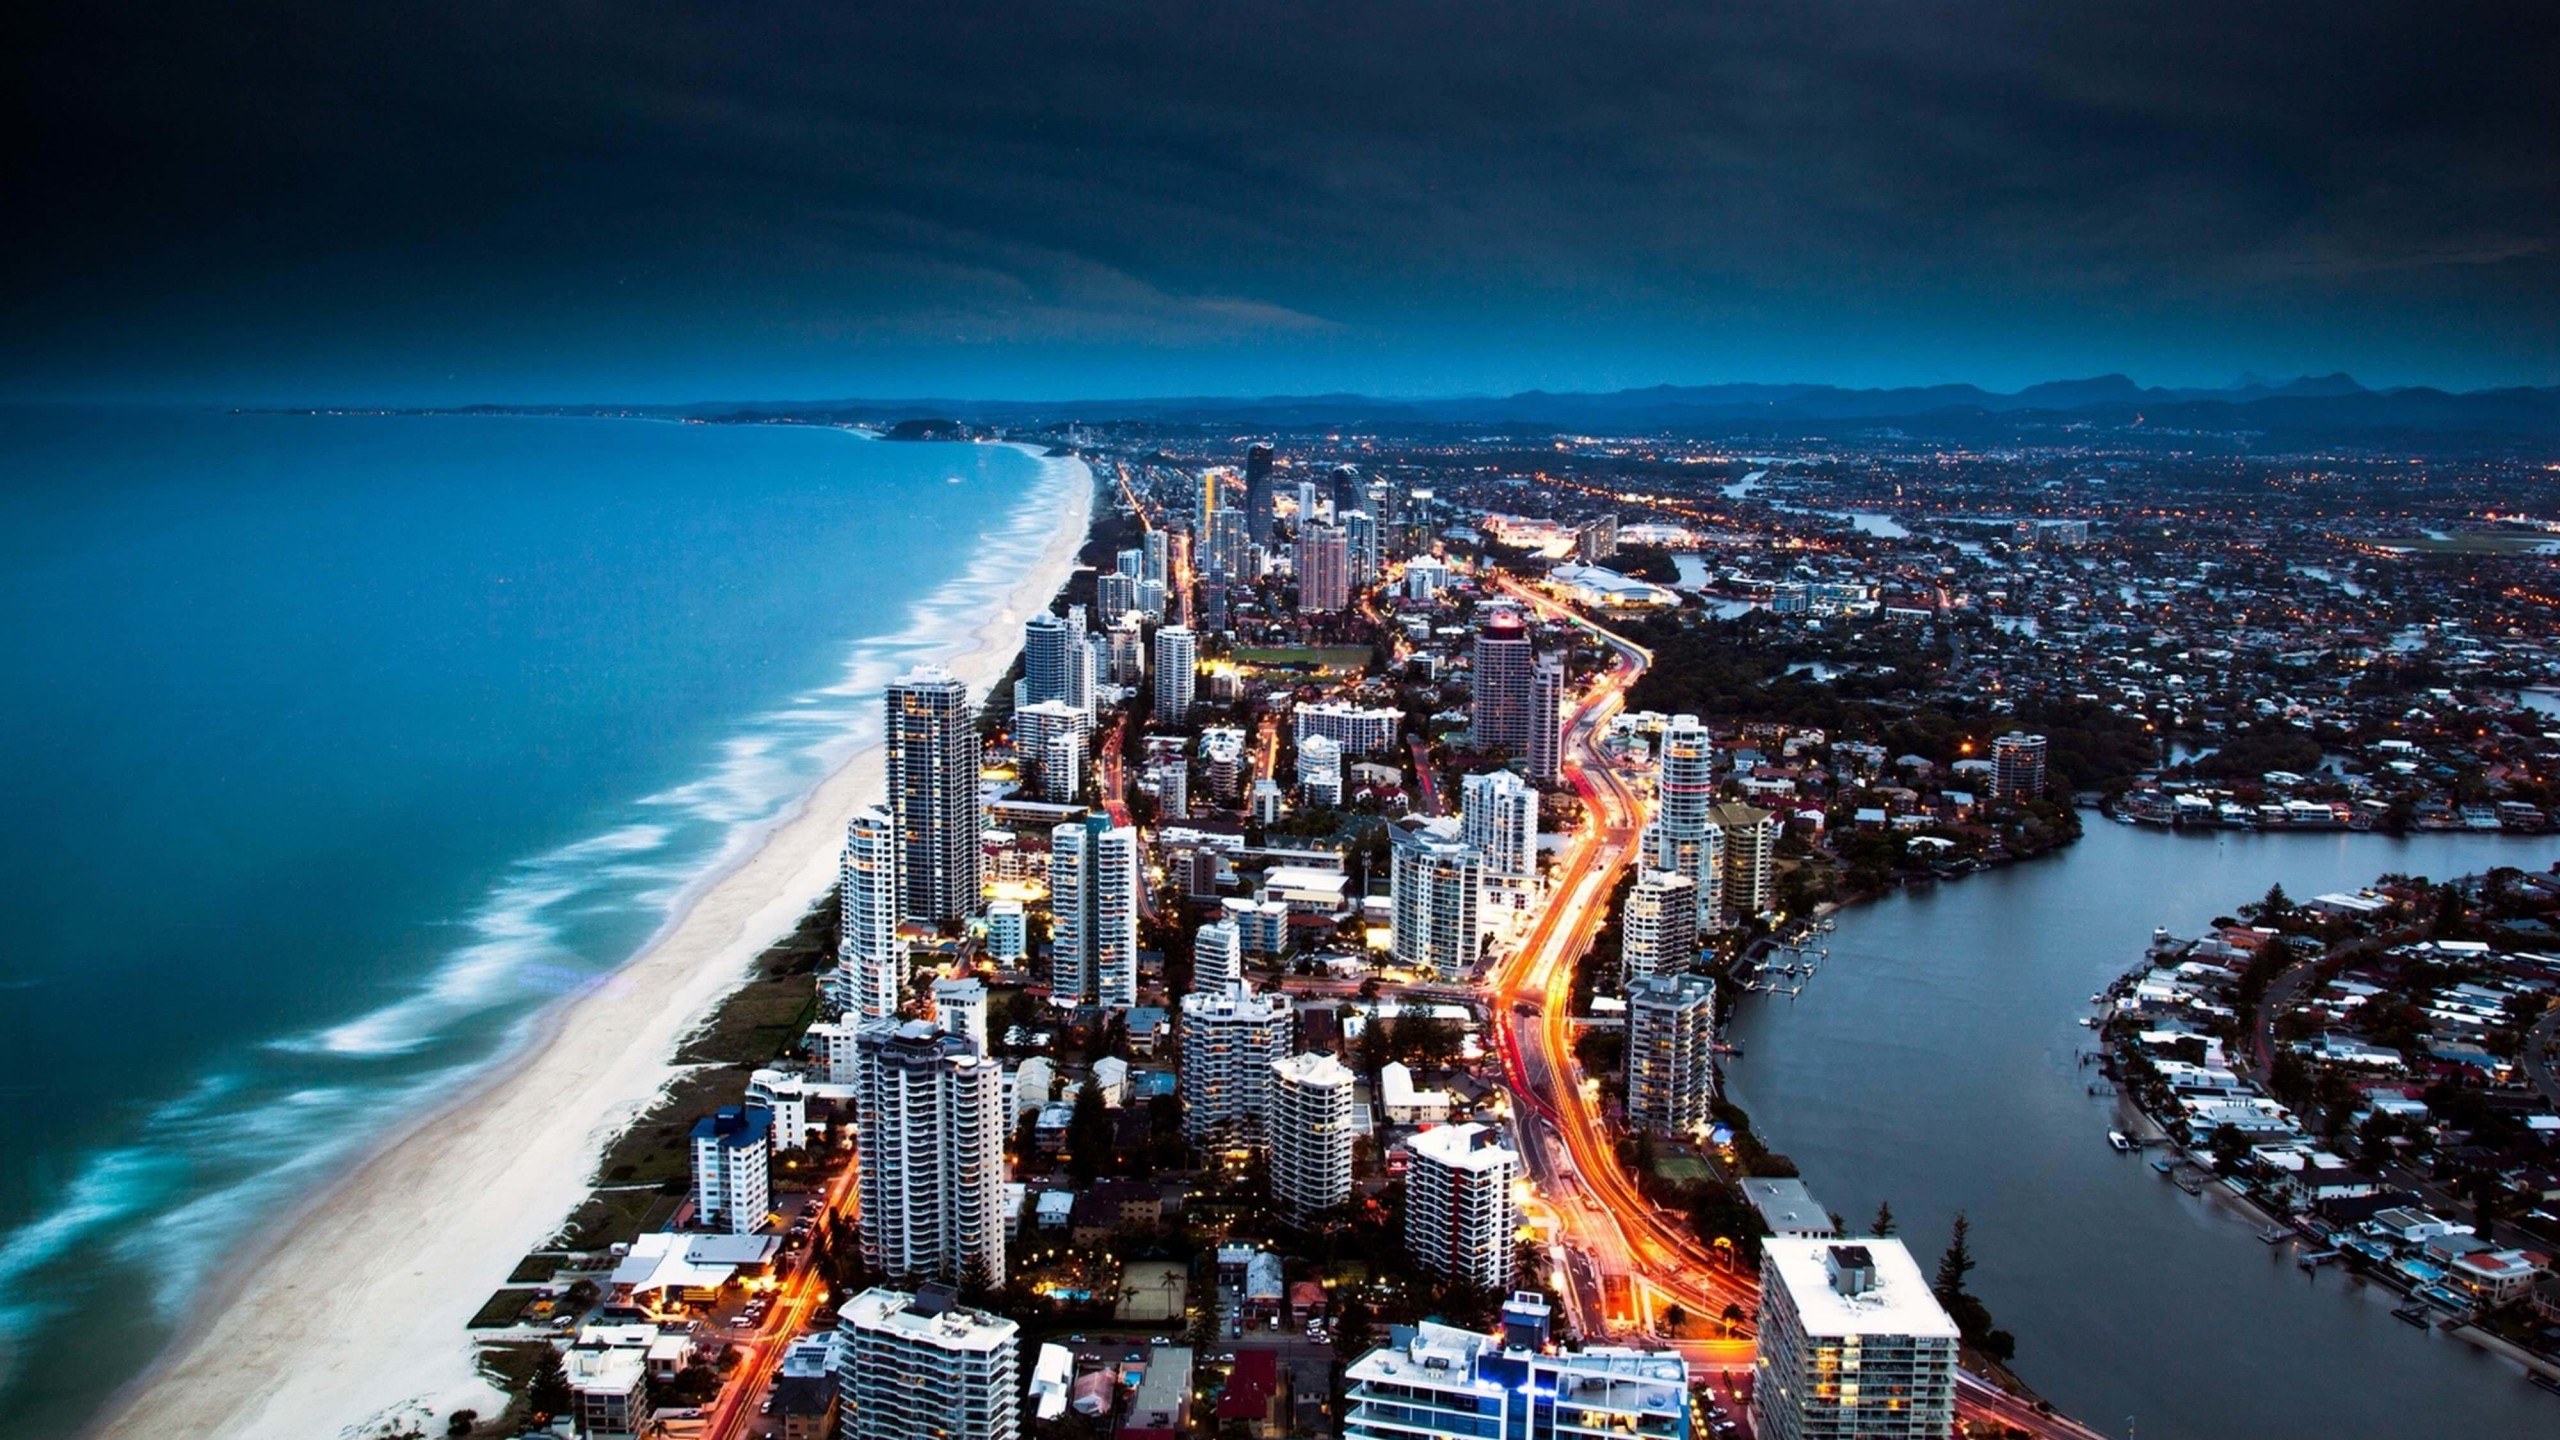 Gold Coast City in Queensland, Australia Wallpaper for Desktop 2560x1440